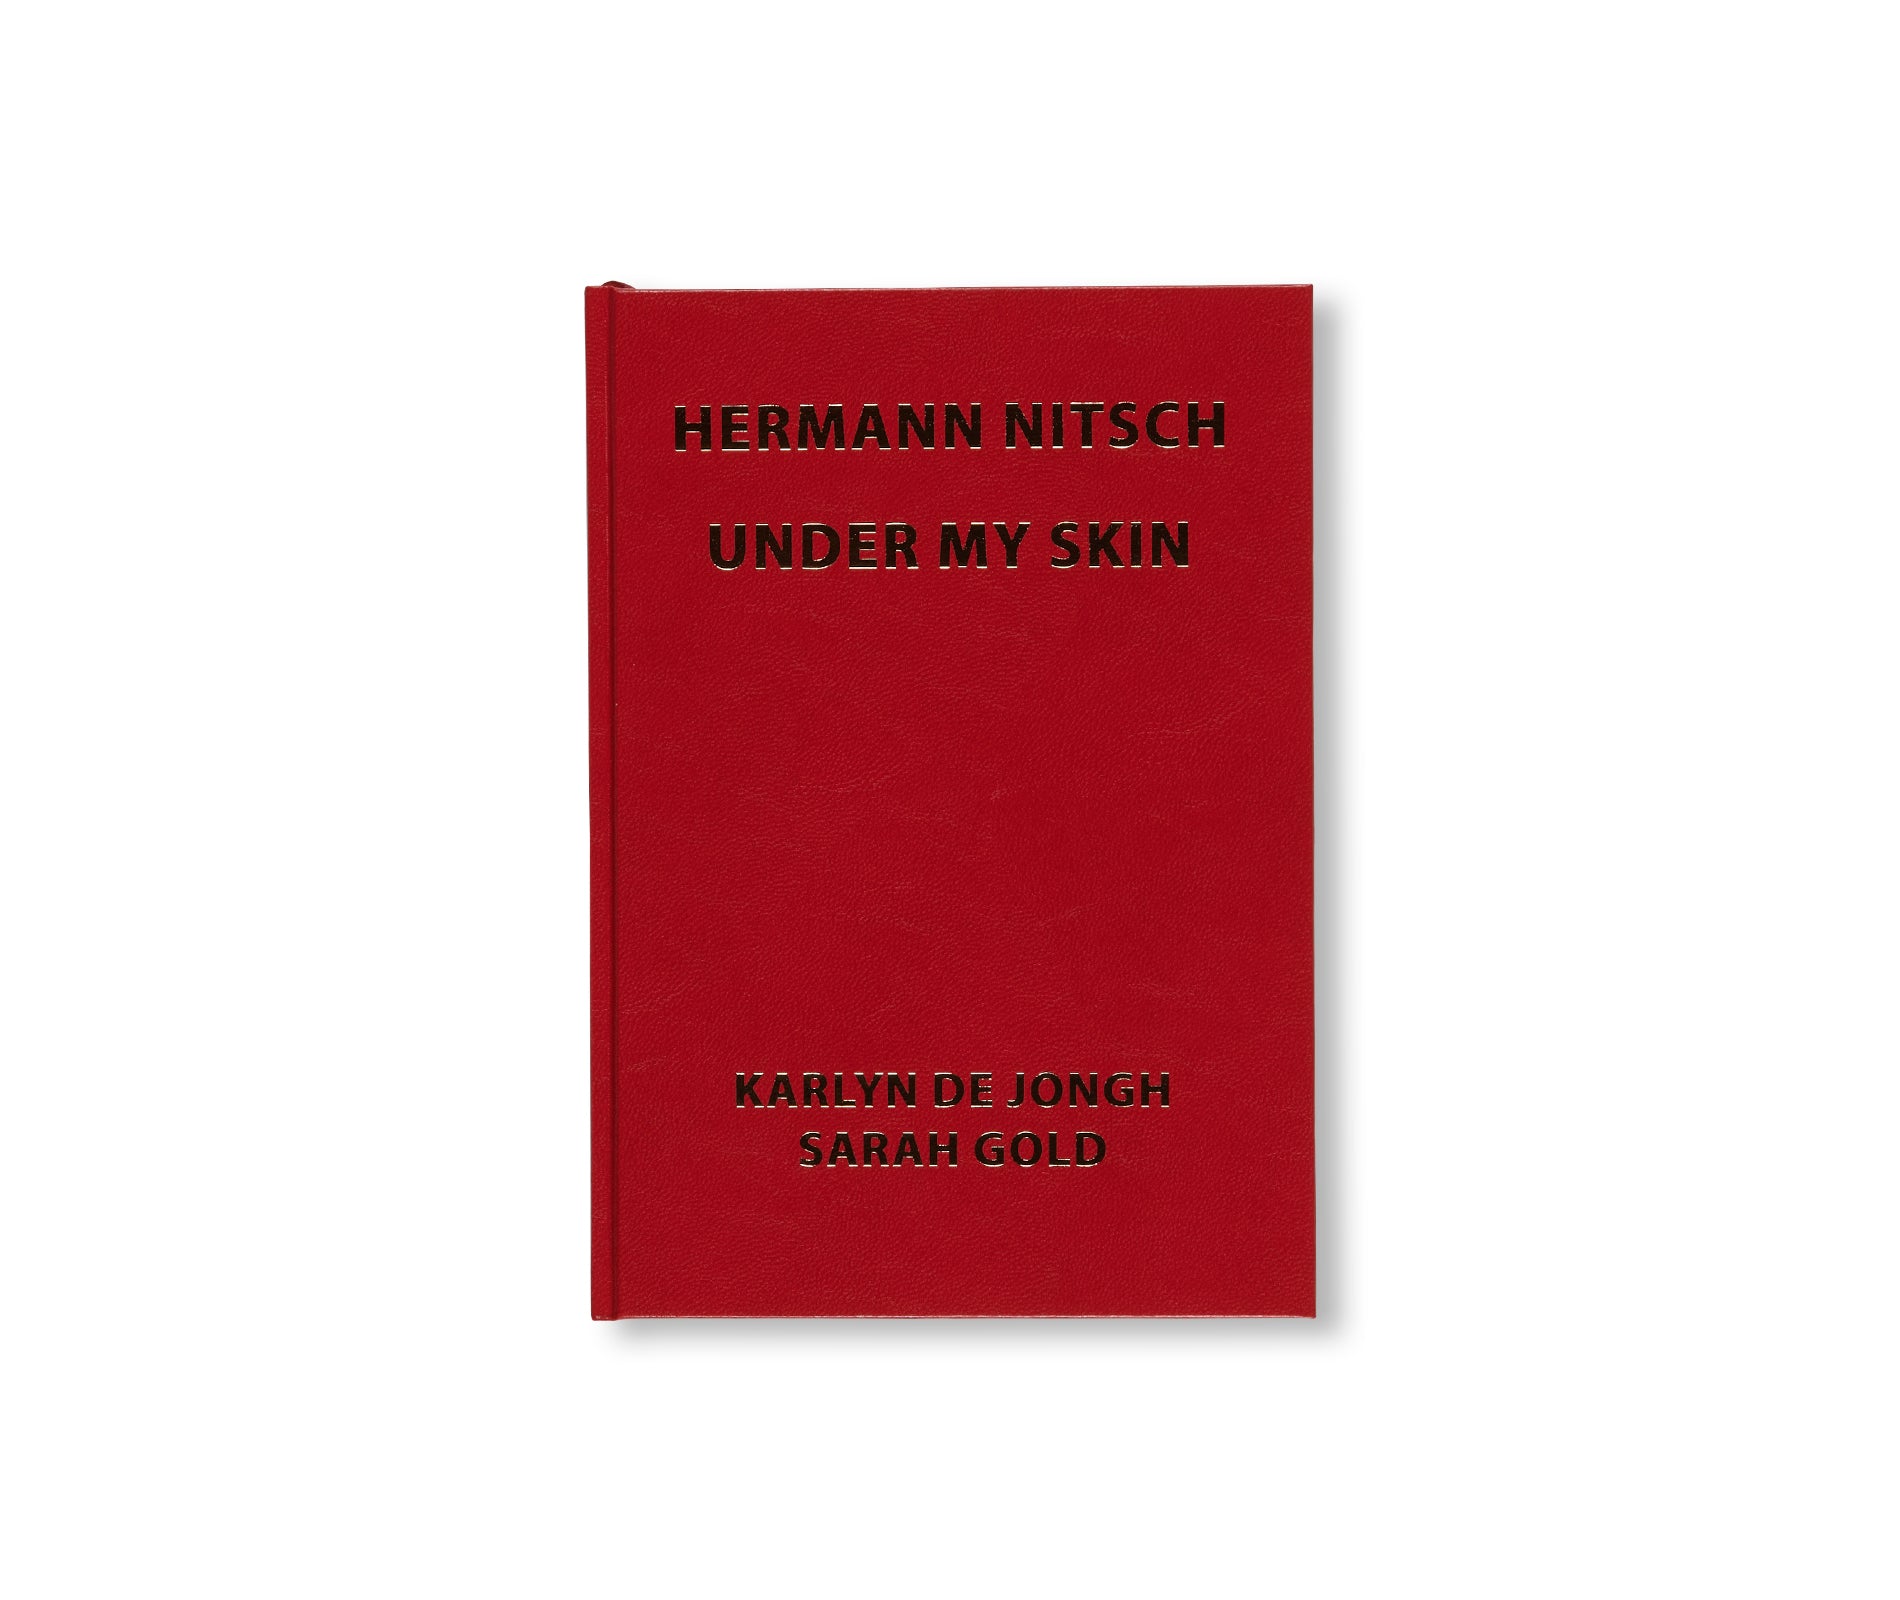 UNDER MY SKIN by Hermann Nitsch